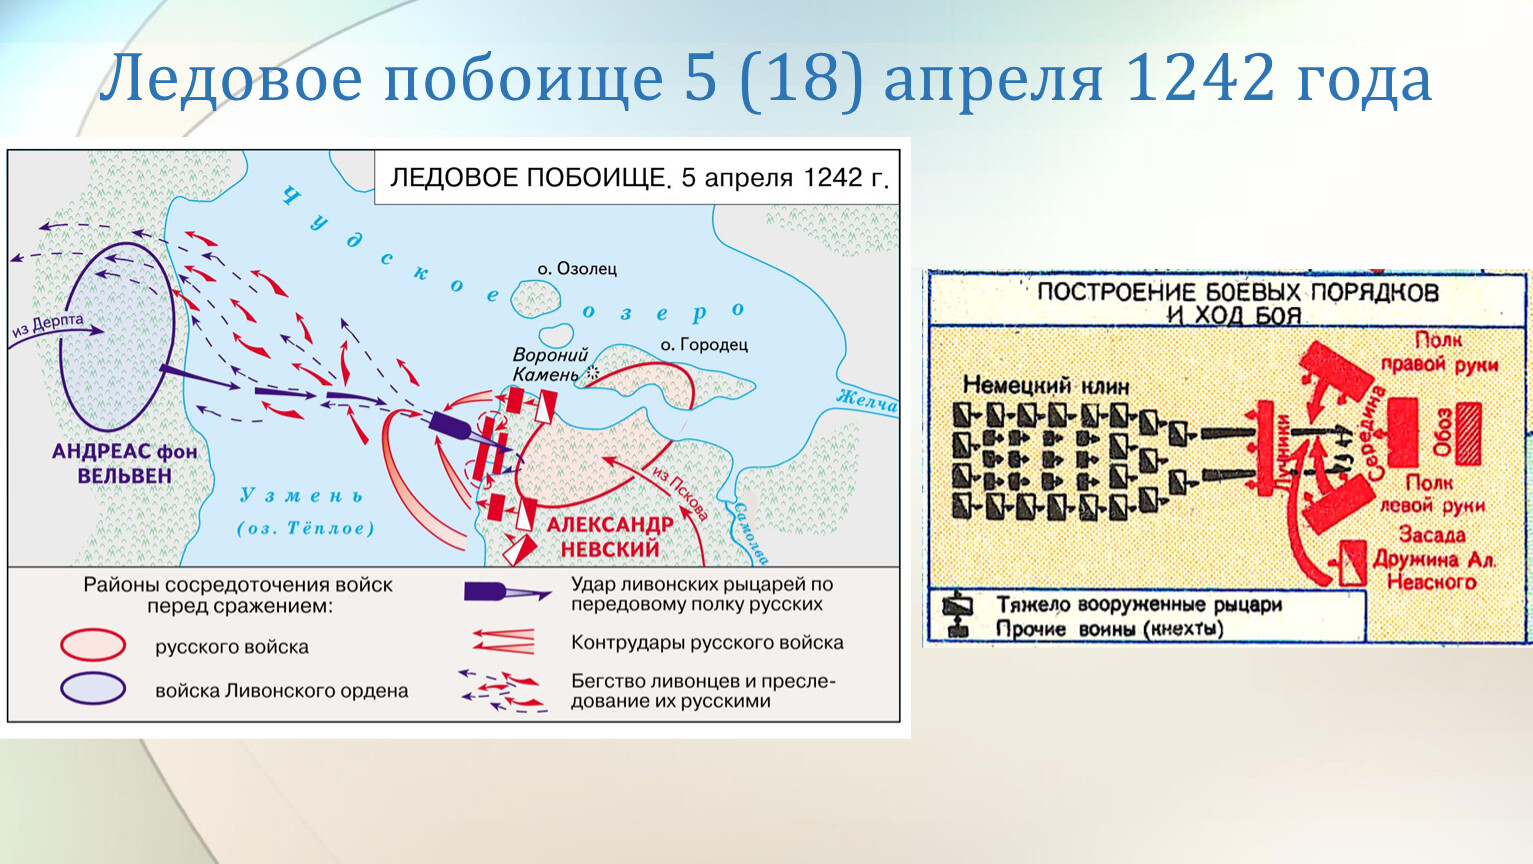 Битва на озеро 1 2. Битва на Чудском озере схема битвы. Битва на Чудском озере 1242 год Ледовое побоище карта.